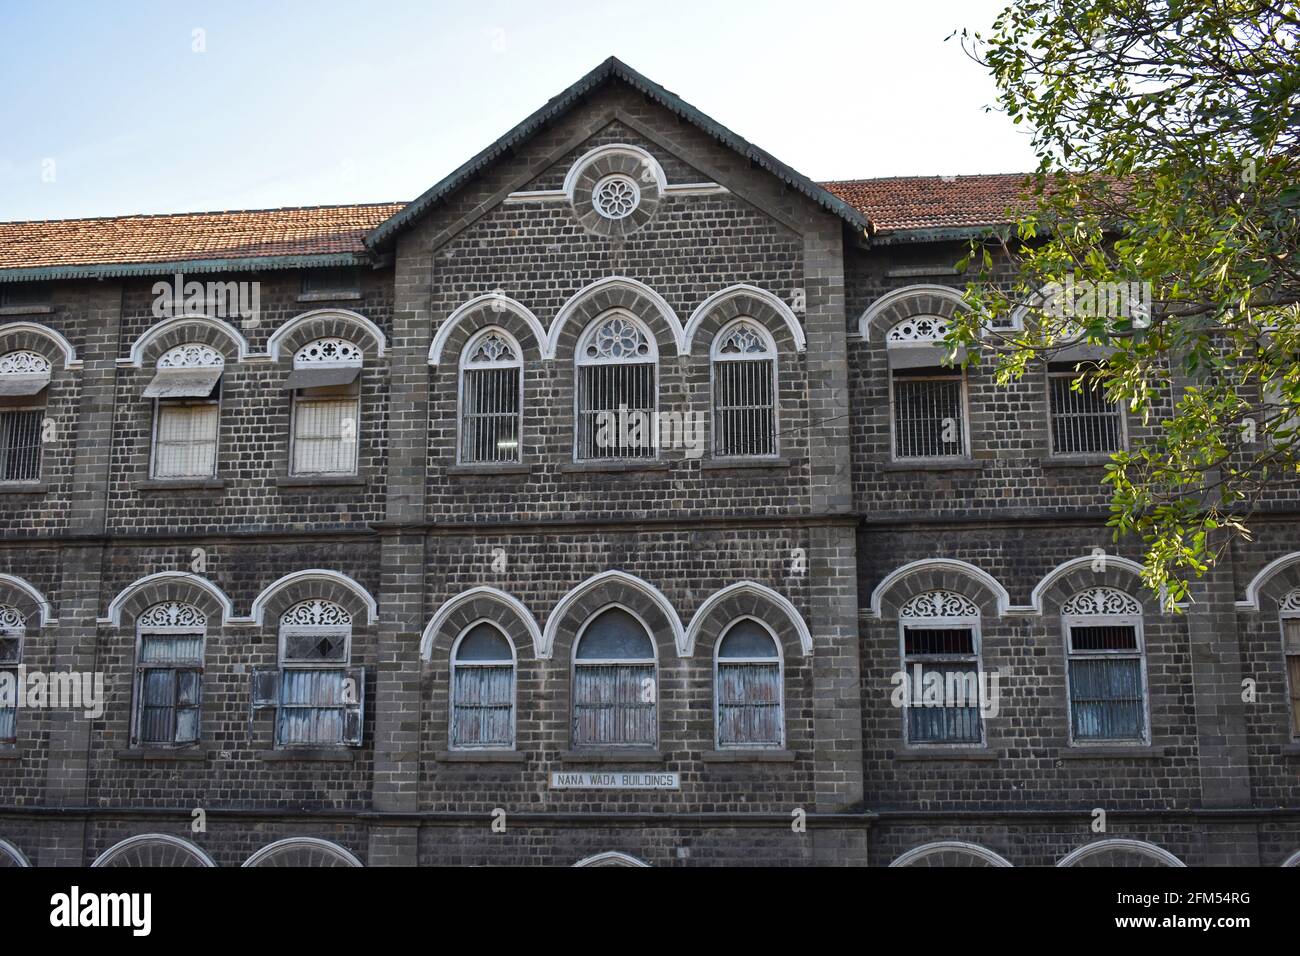 Le bâtiment Nana AMA est une école, un bâtiment historique situé près du fort de Shaniwarwada à Pune, Maharashtra, en Inde Banque D'Images